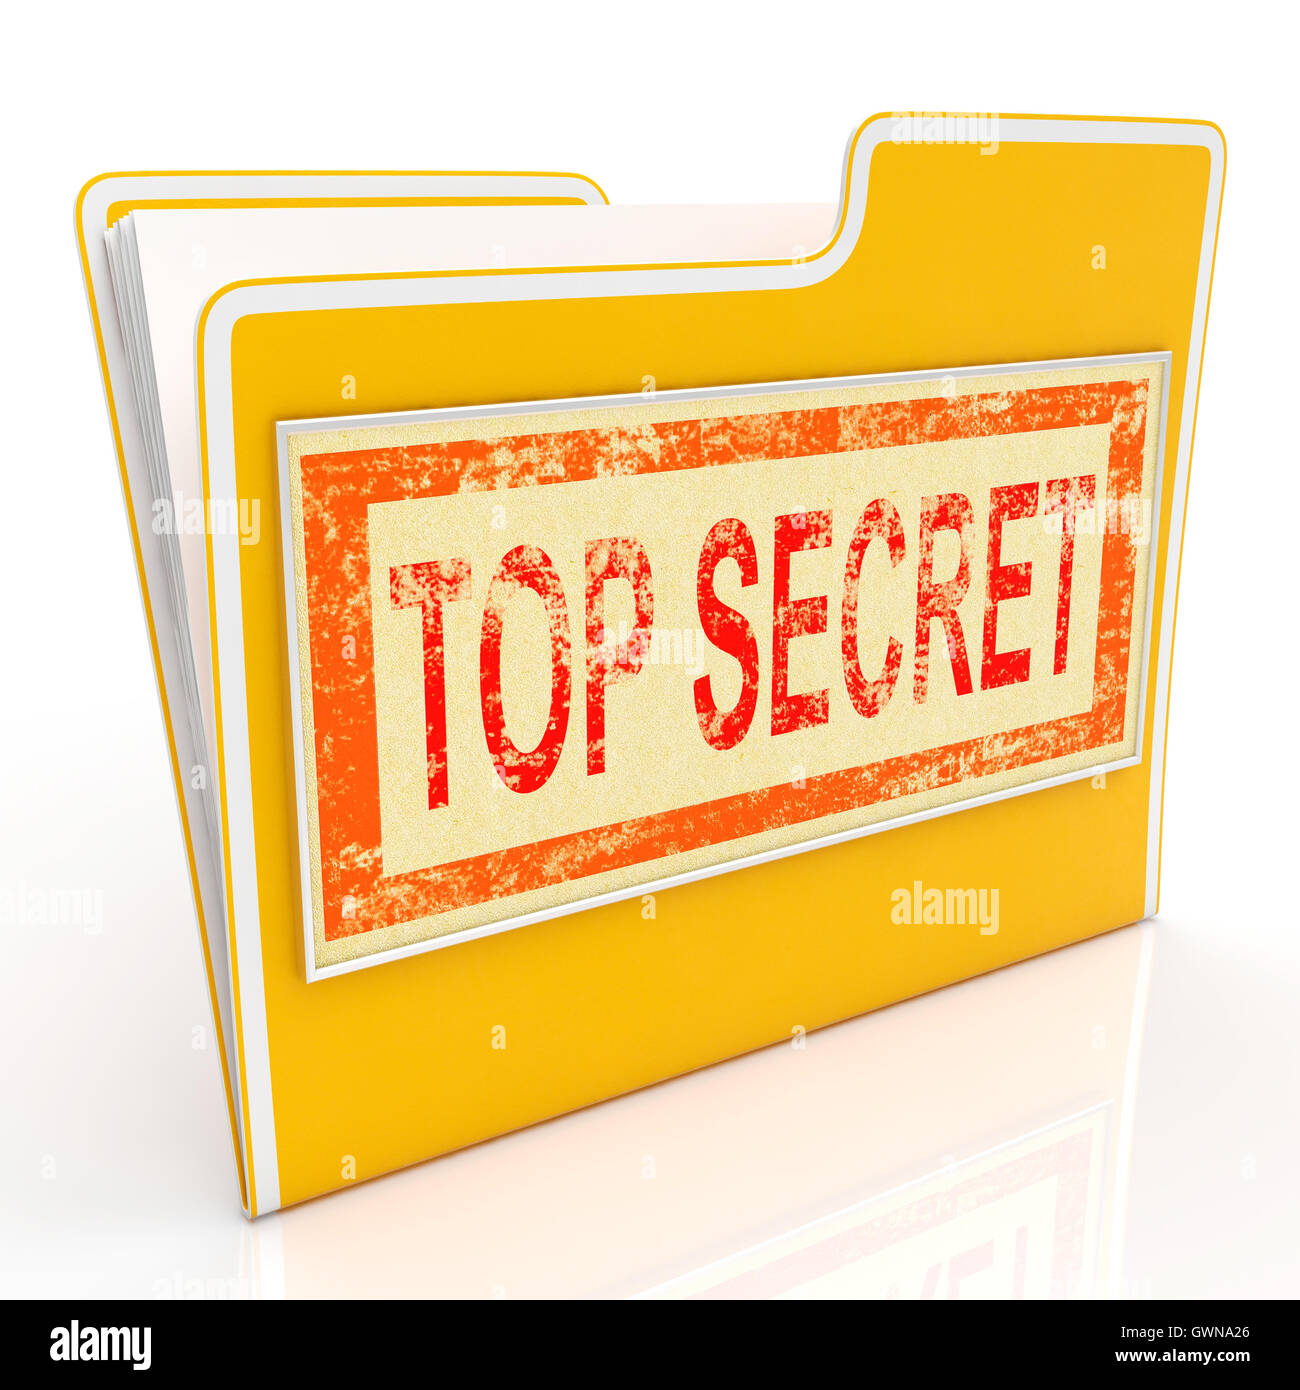 Top geheime Datei zeigt privaten Ordner oder Dateien Stockfoto